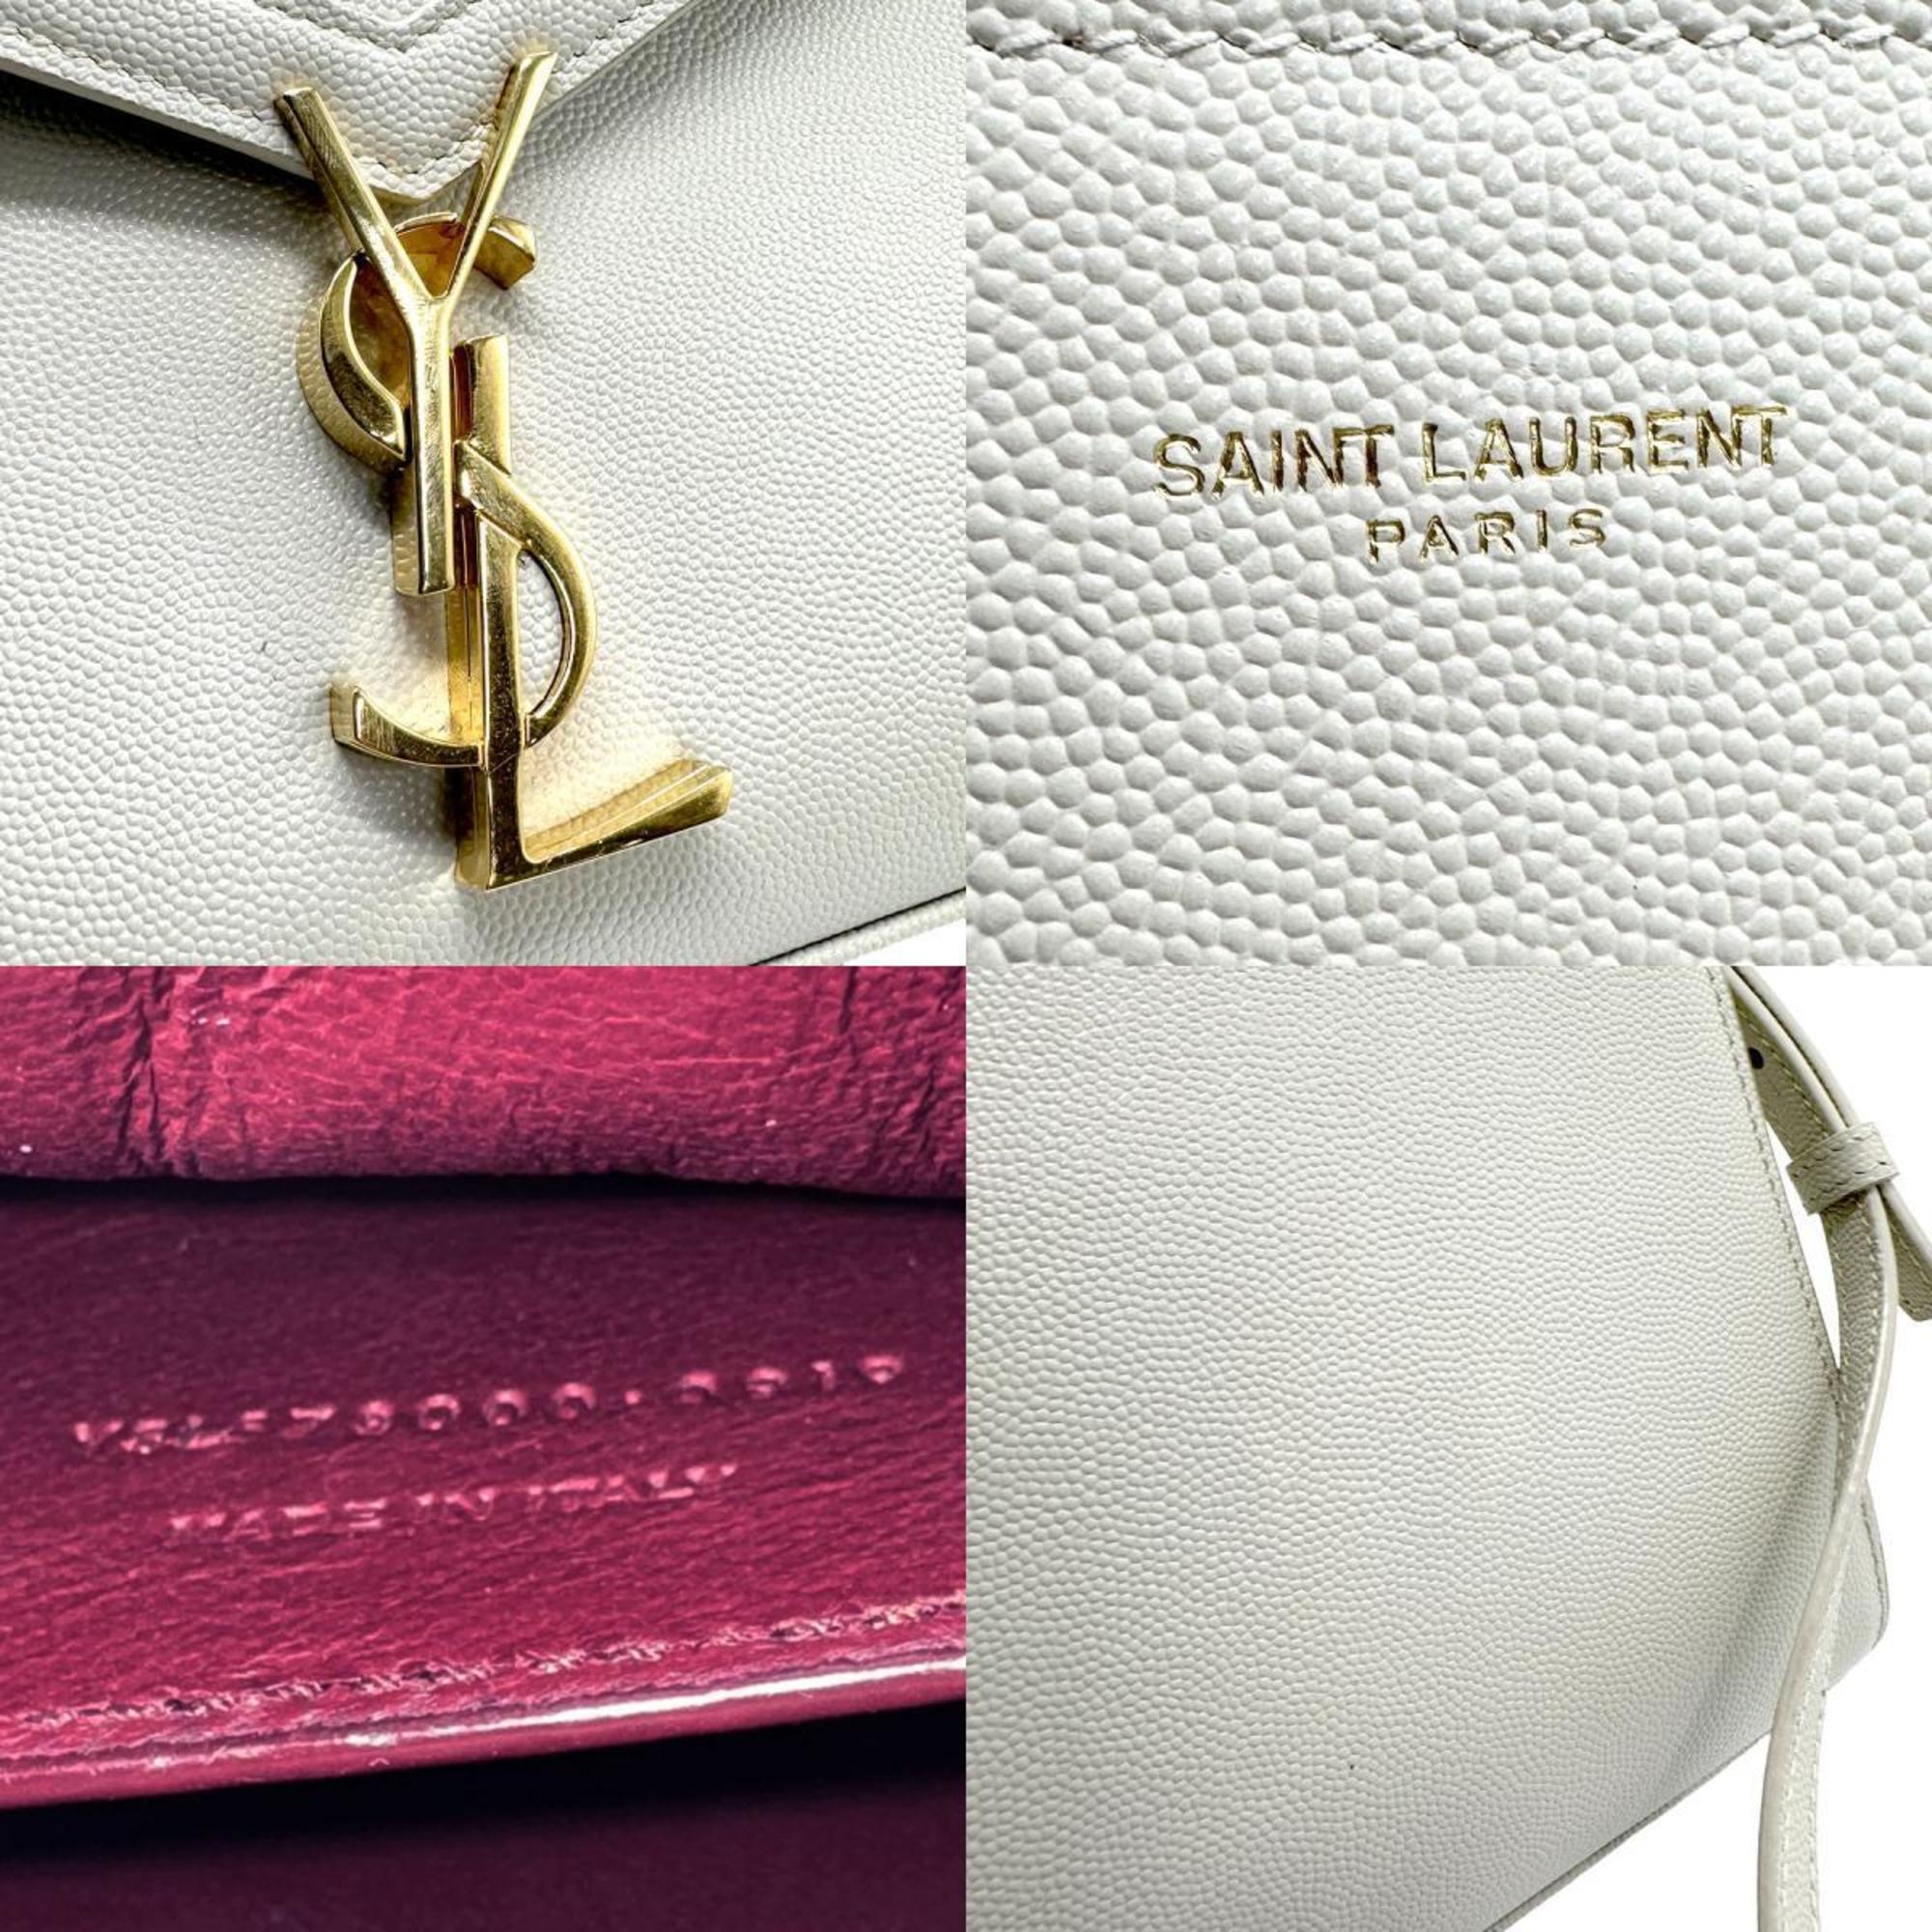 Saint Laurent SAINT LAURENT handbag shoulder bag leather off-white gold women's z1352